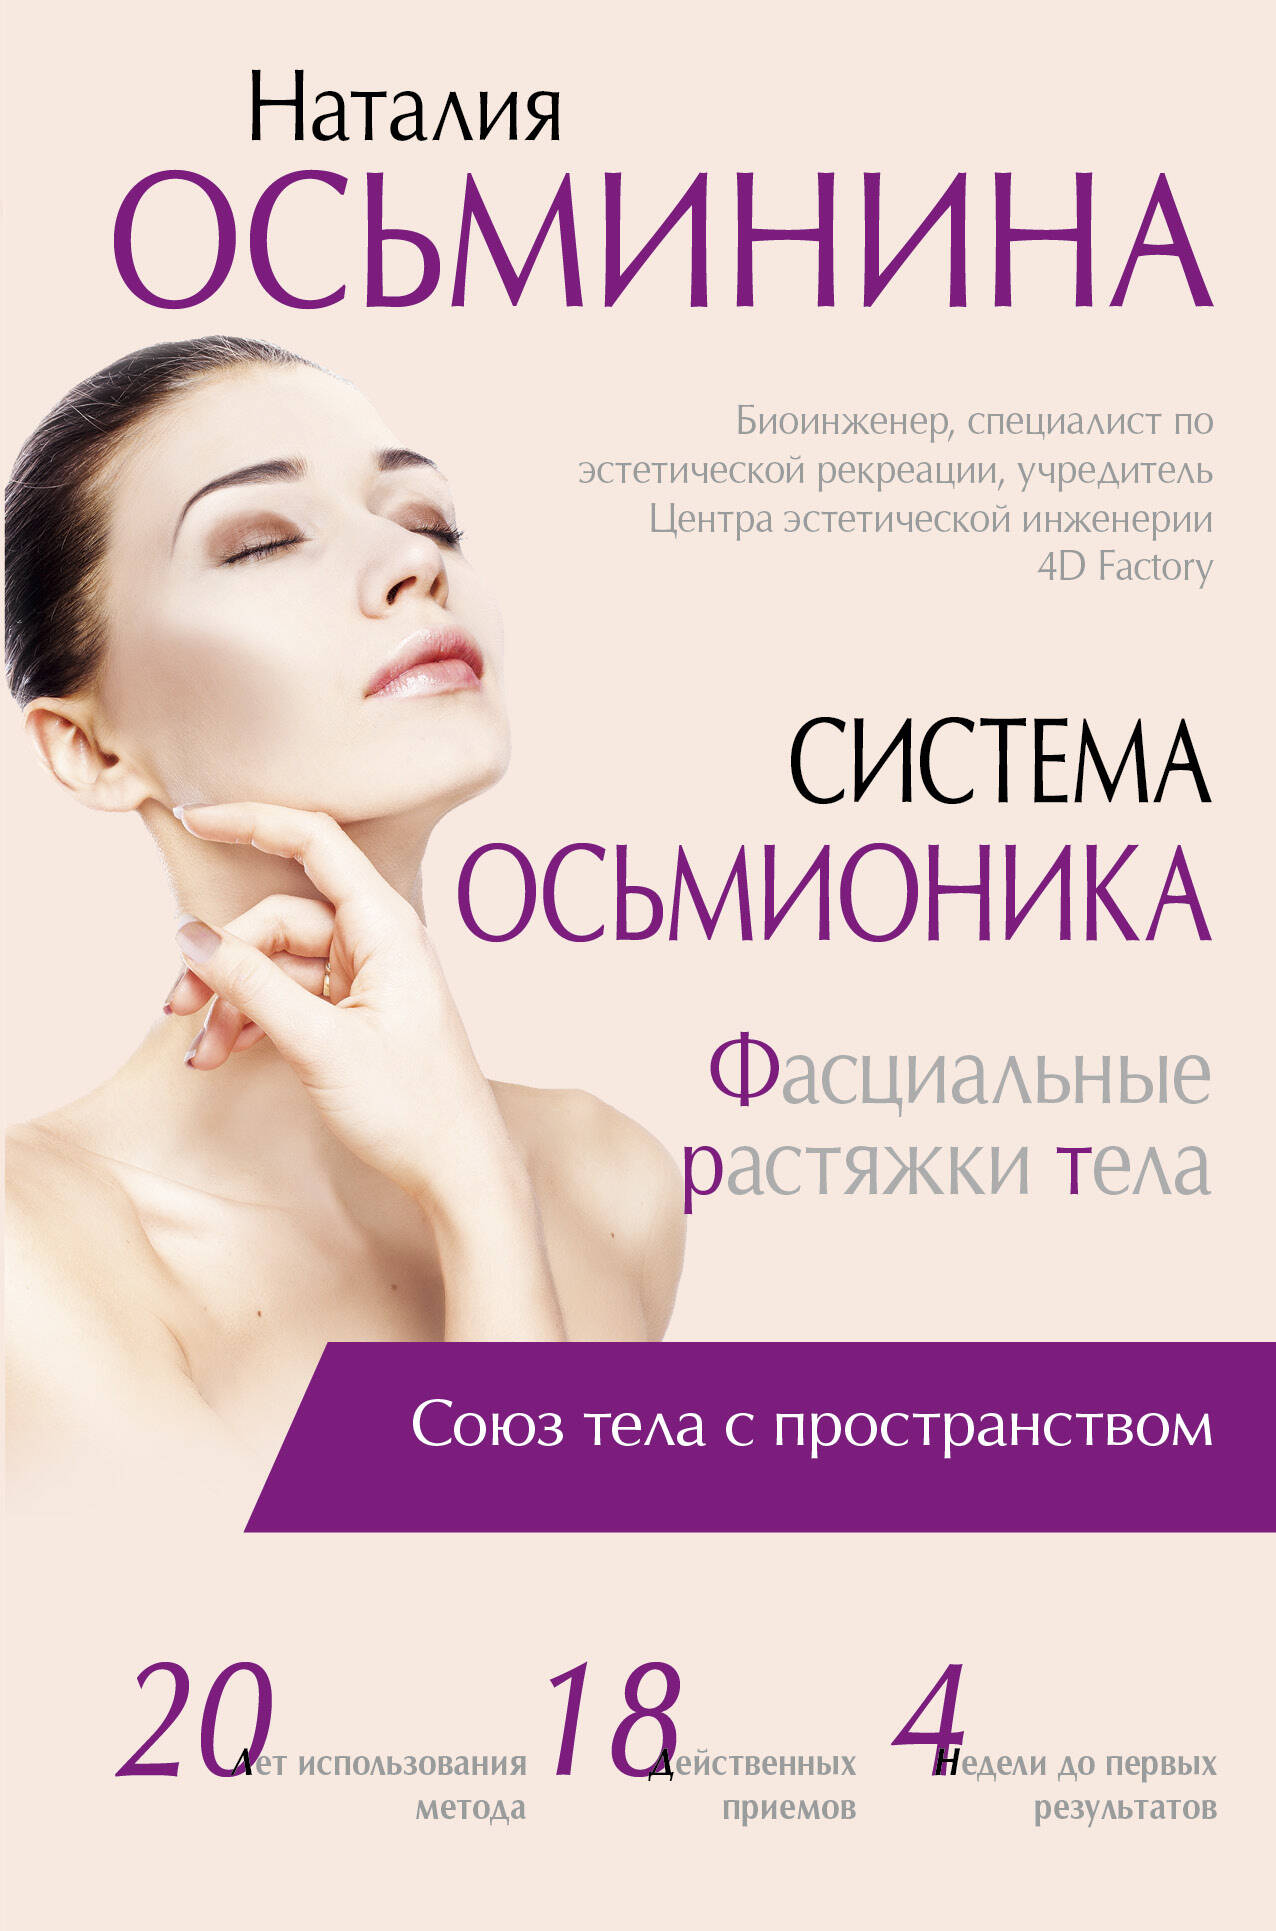 Осьминина Наталия Борисовна Система Осьмионика: фасциальные растяжки тела - страница 0